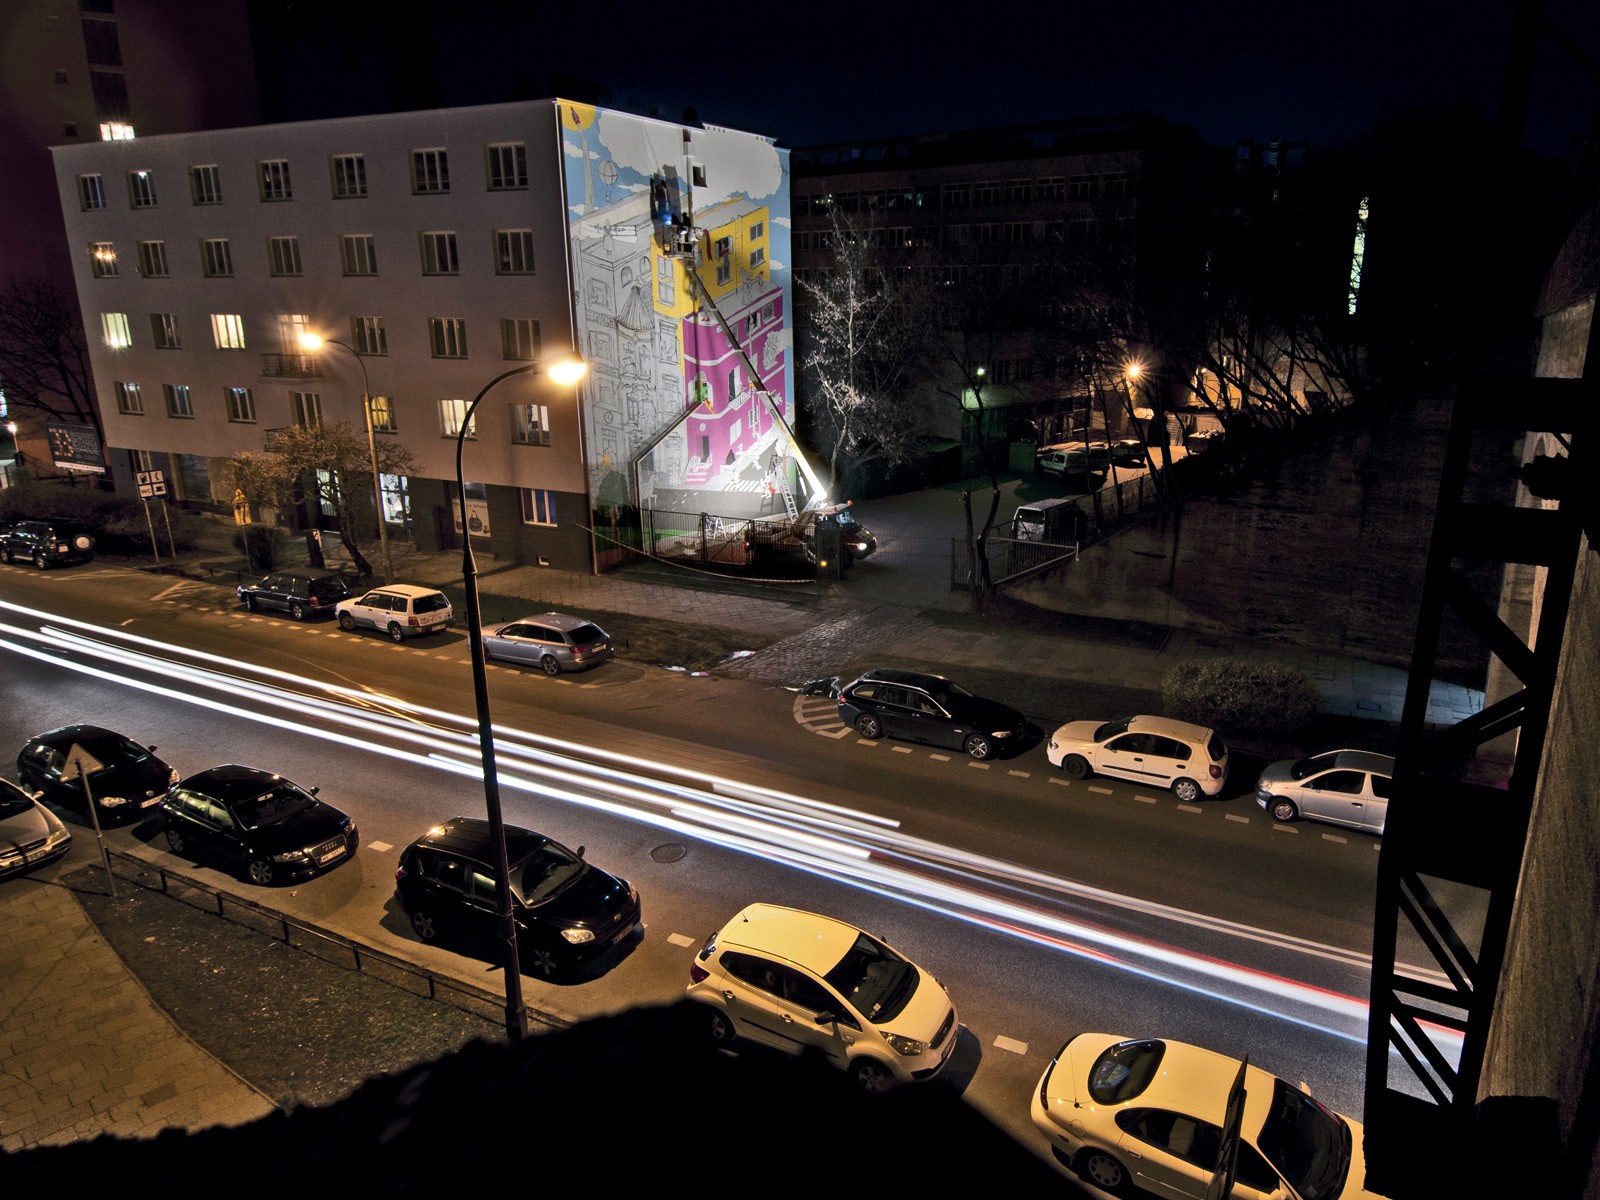 Mural reklamowy Empik o Czytanie tu chodzi - Warszawa Powiśle ul. Solec 85 | kampania promująca czytanie | Portfolio